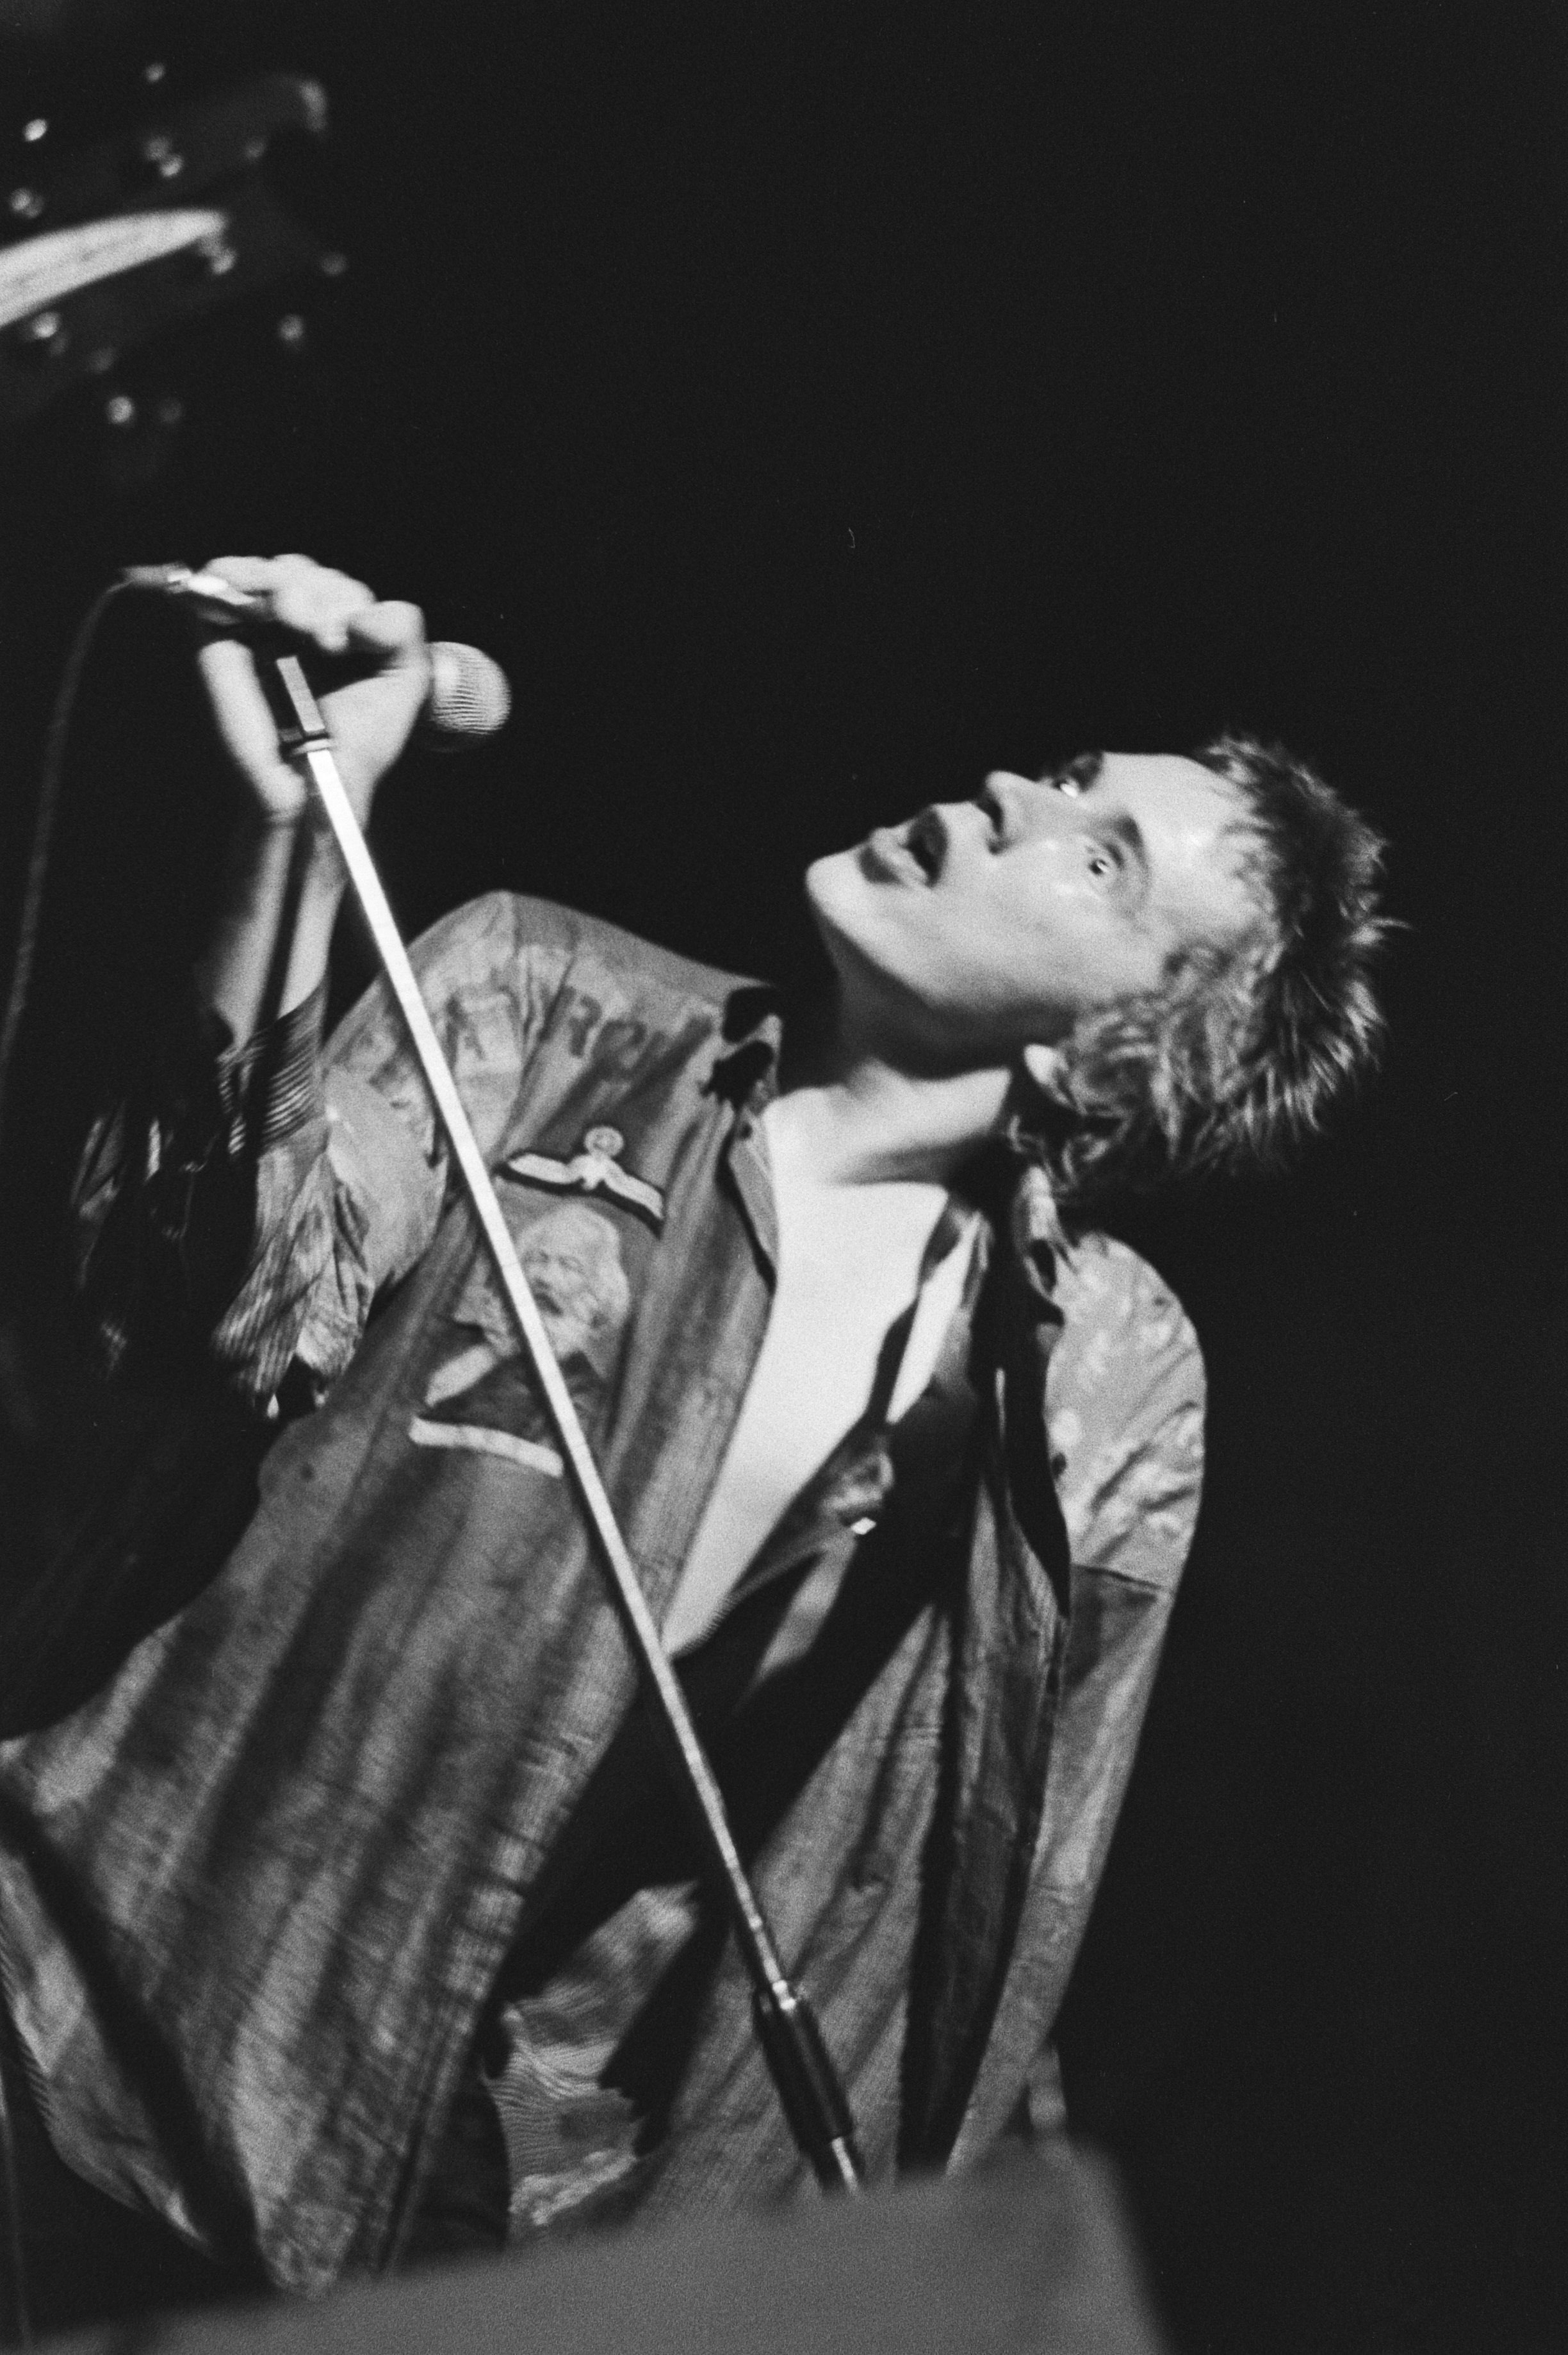 Johnny Rotten, en una actuación de los Sex Pistols en Amsterdam en 1977 / Koen Suyk - Nationaal Archief, Den Haag (CC0 1.0)